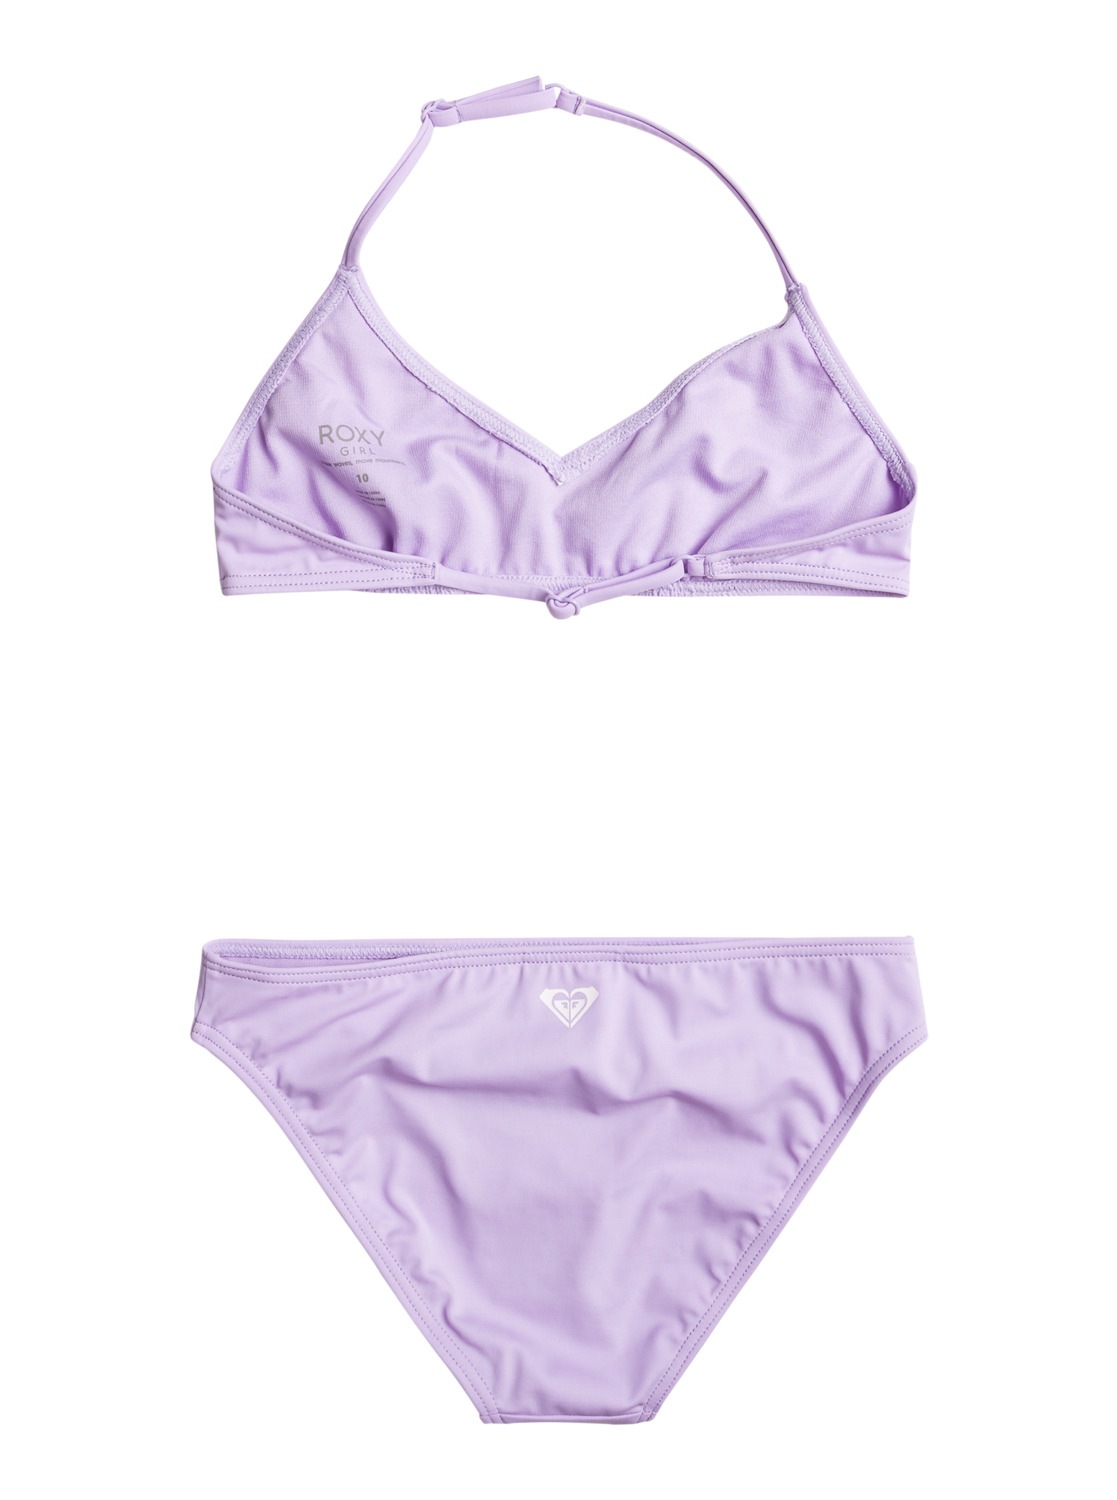 Days« Roxy online kaufen »Swim For Triangel-Bikini